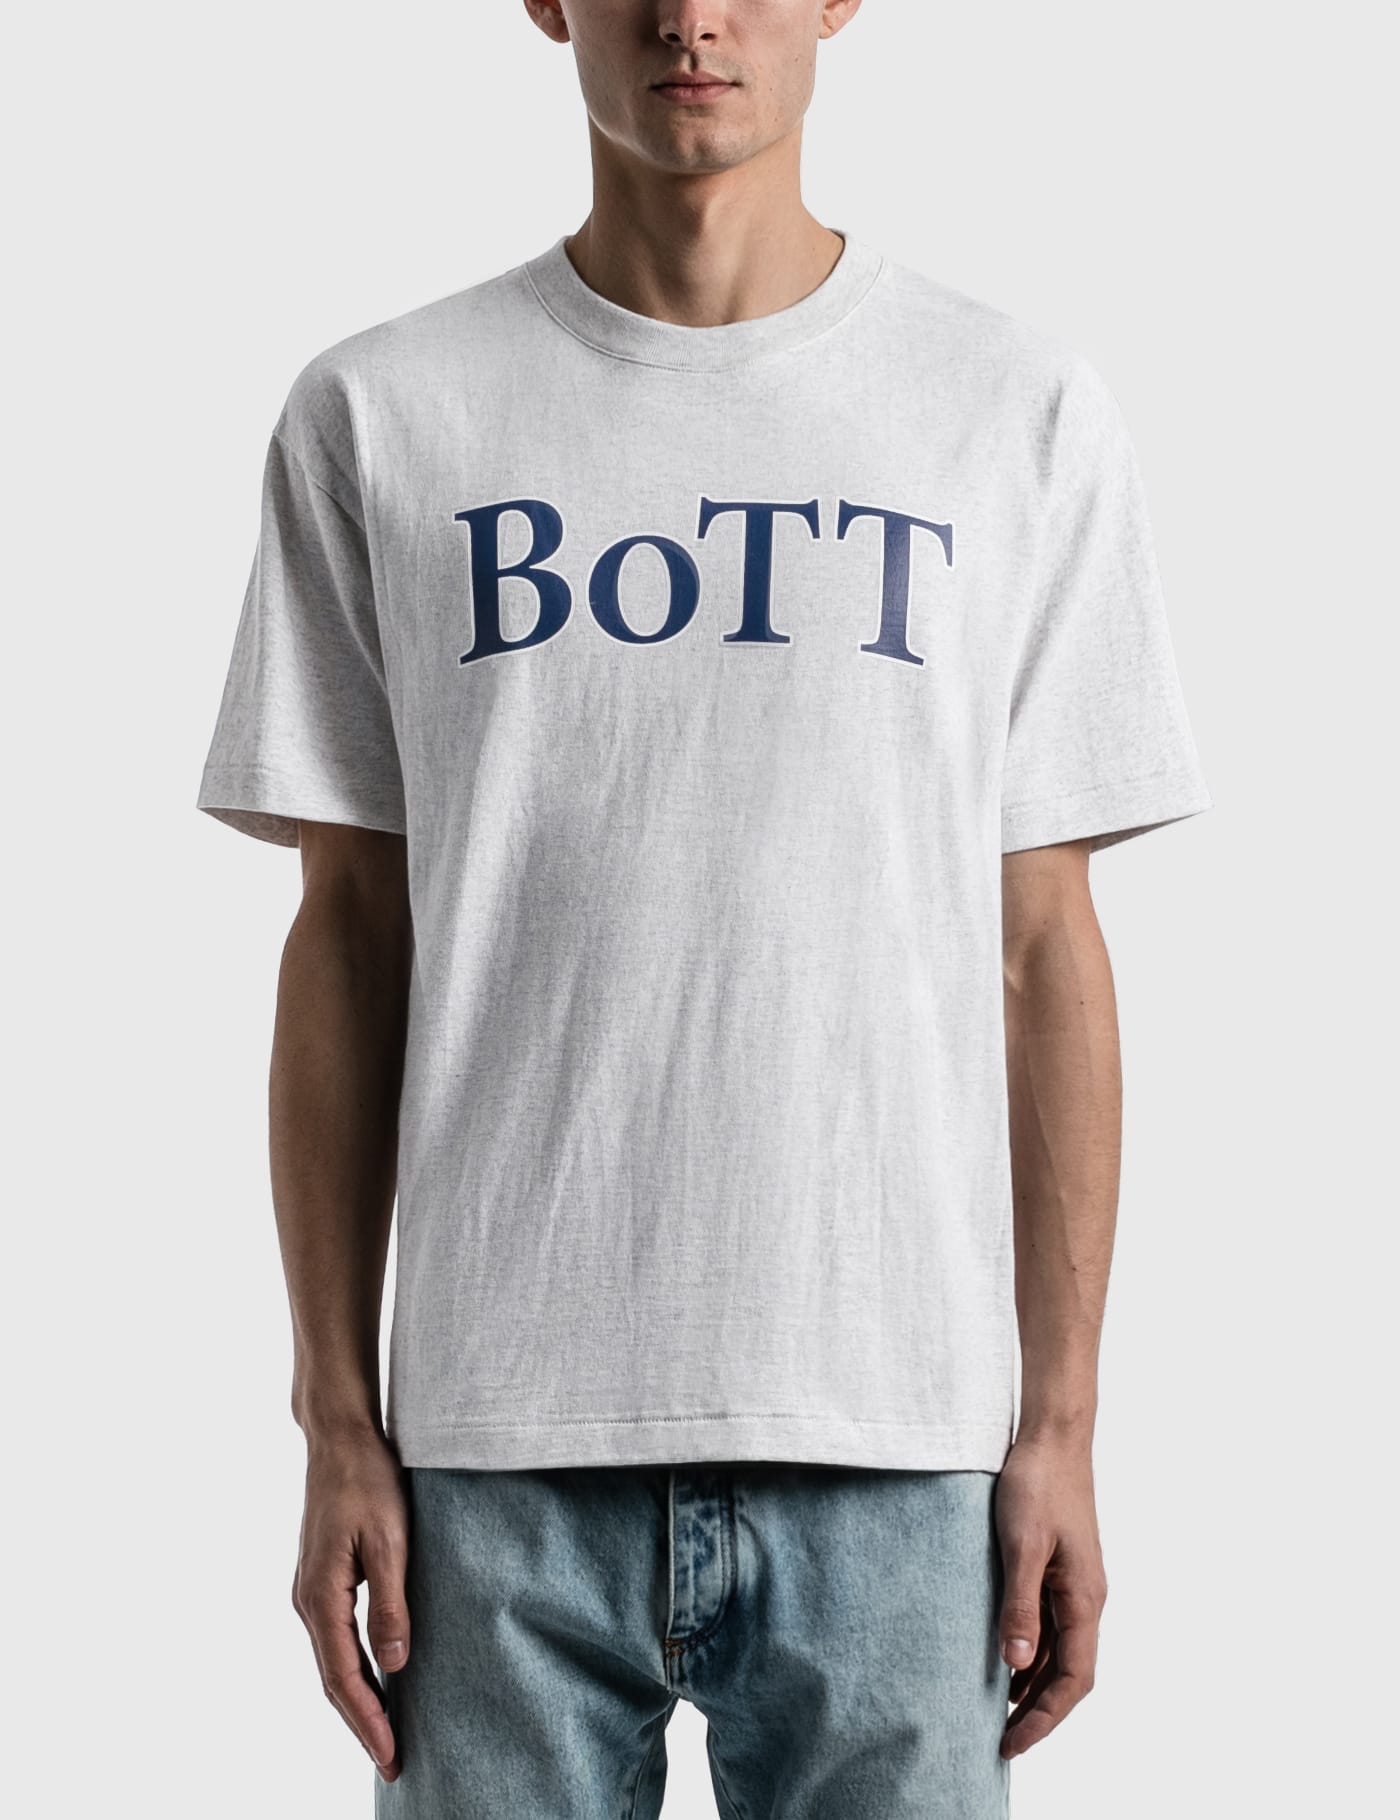 BoTT - BoTT OG Logo T-shirt | HBX - ハイプビースト(Hypebeast)が ...